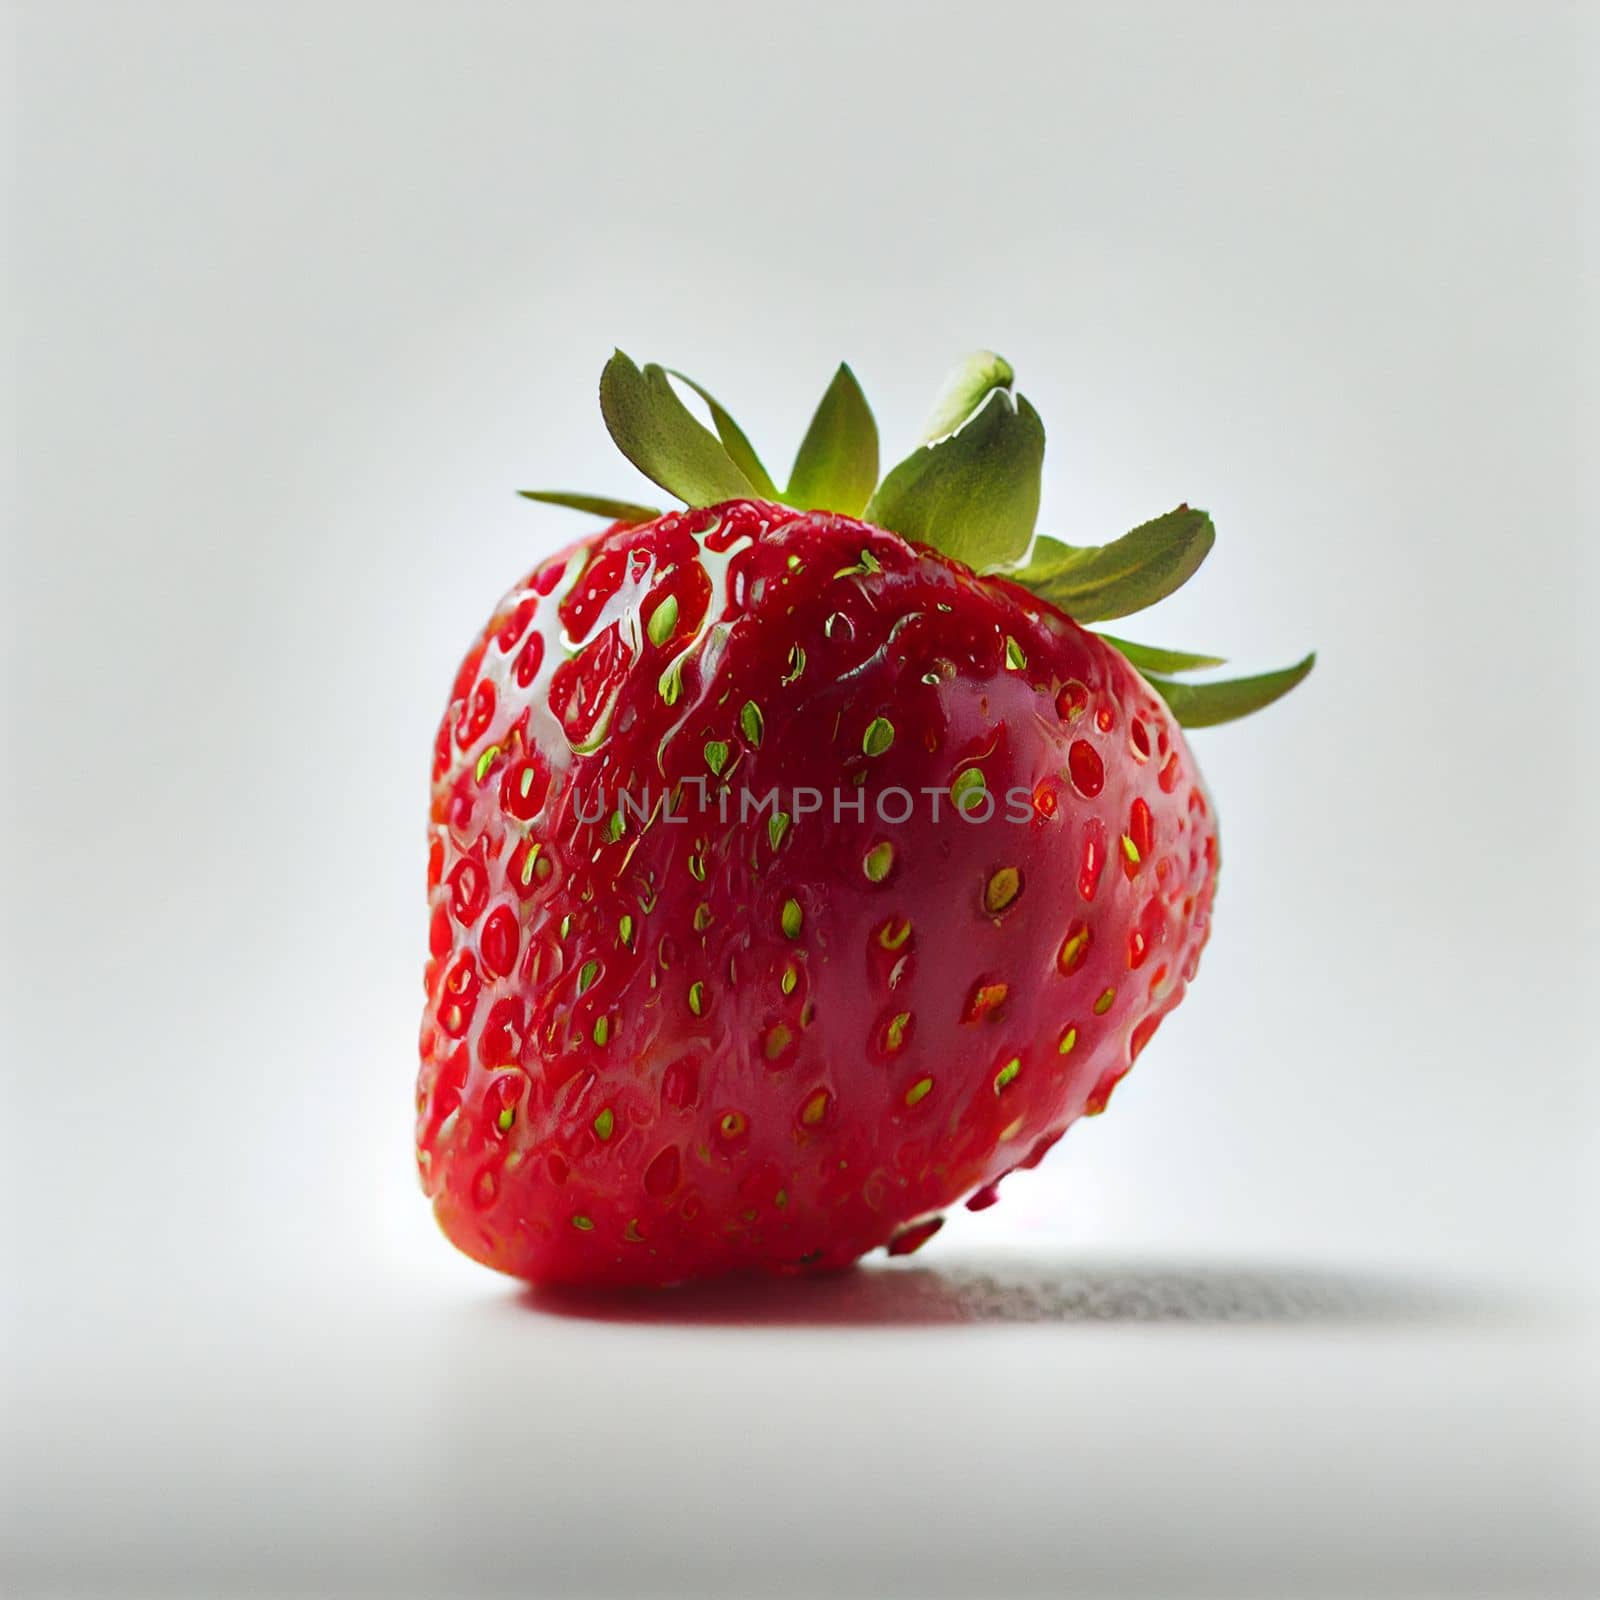 Strawberry fruit isolated on white background. by FokasuArt